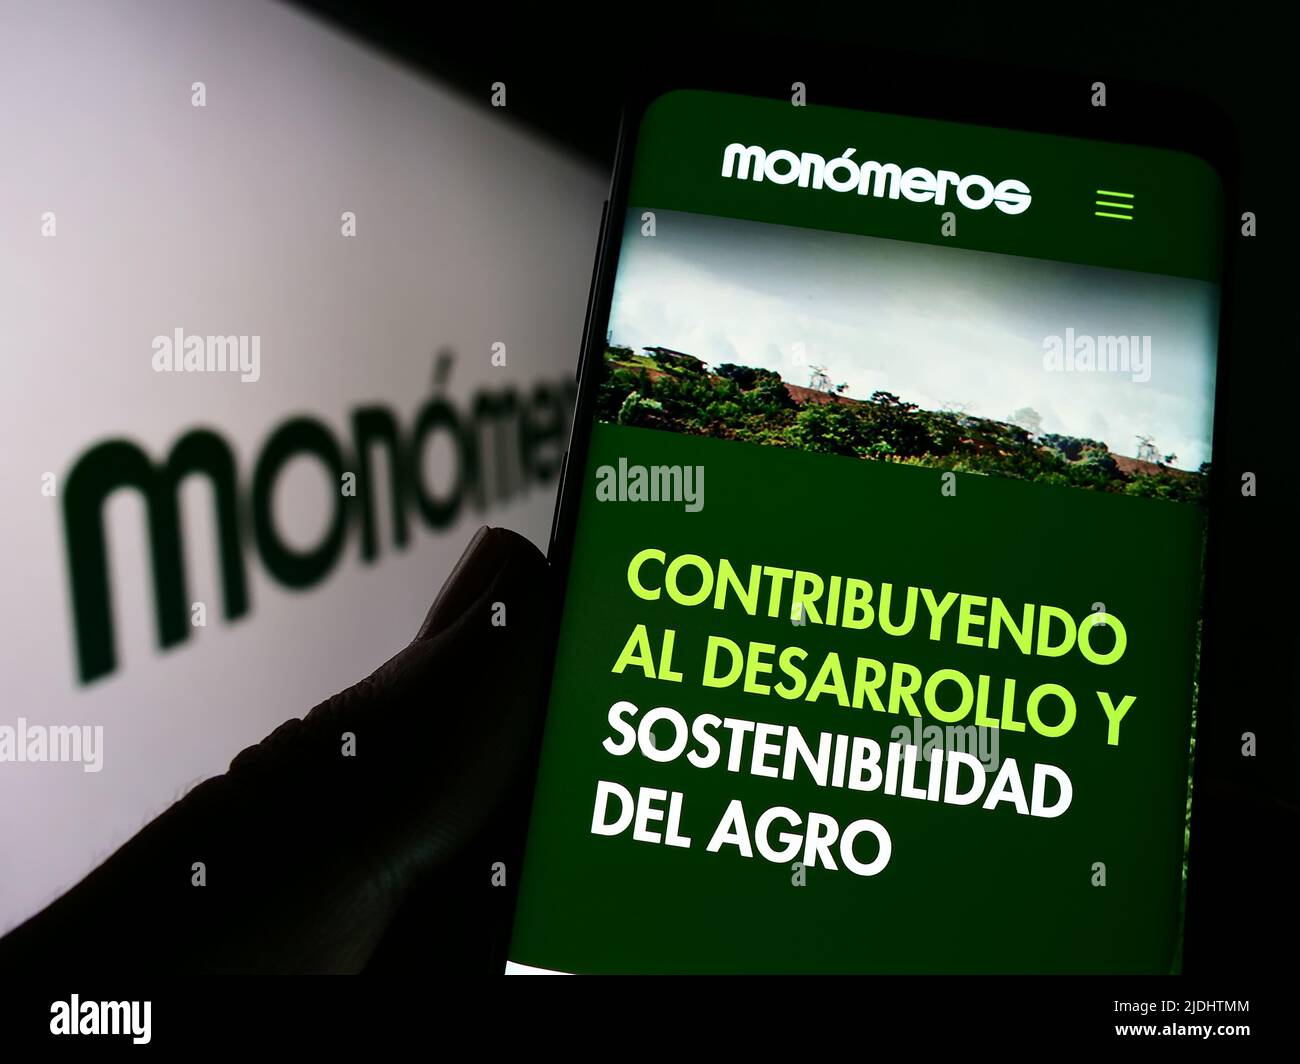 Persona que sostiene el celular con la página web de la empresa Monomeros Colombo Venezolanos S.A. en la pantalla delante del logo. Enfoque en el centro de la pantalla del teléfono. Foto de stock